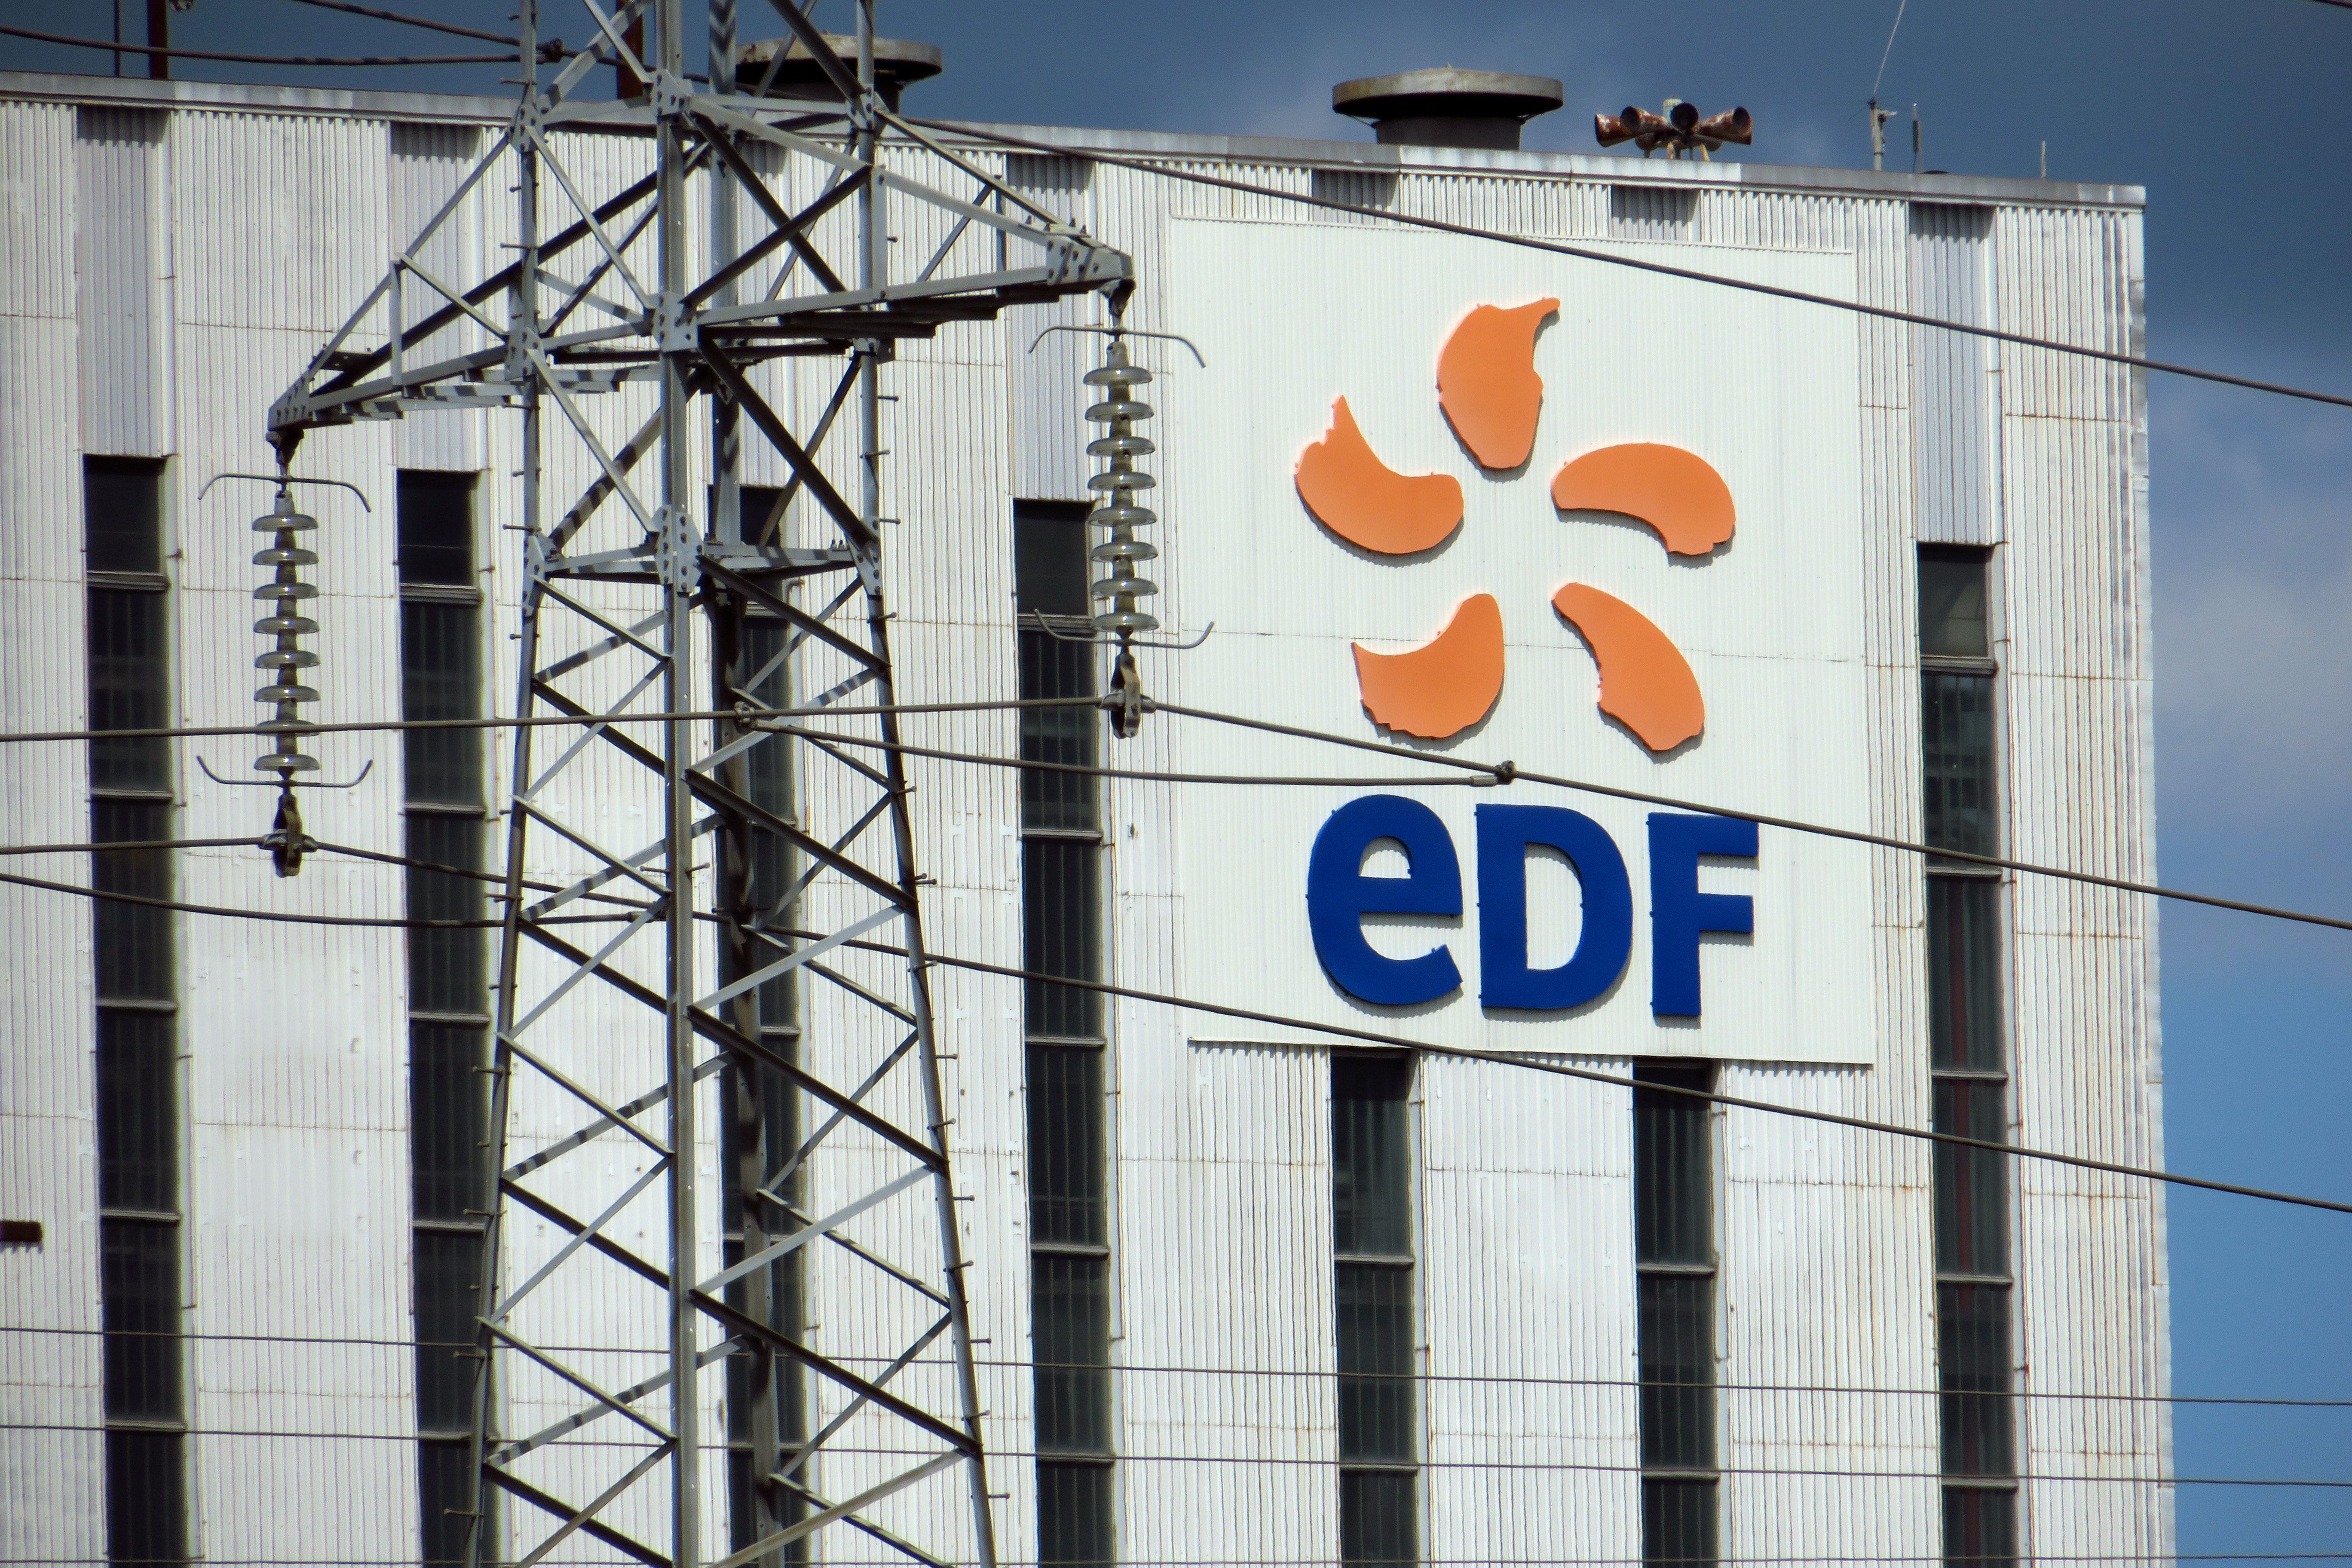 Plan de réorganisation chez EDF : près d'un quart des salariés en grève